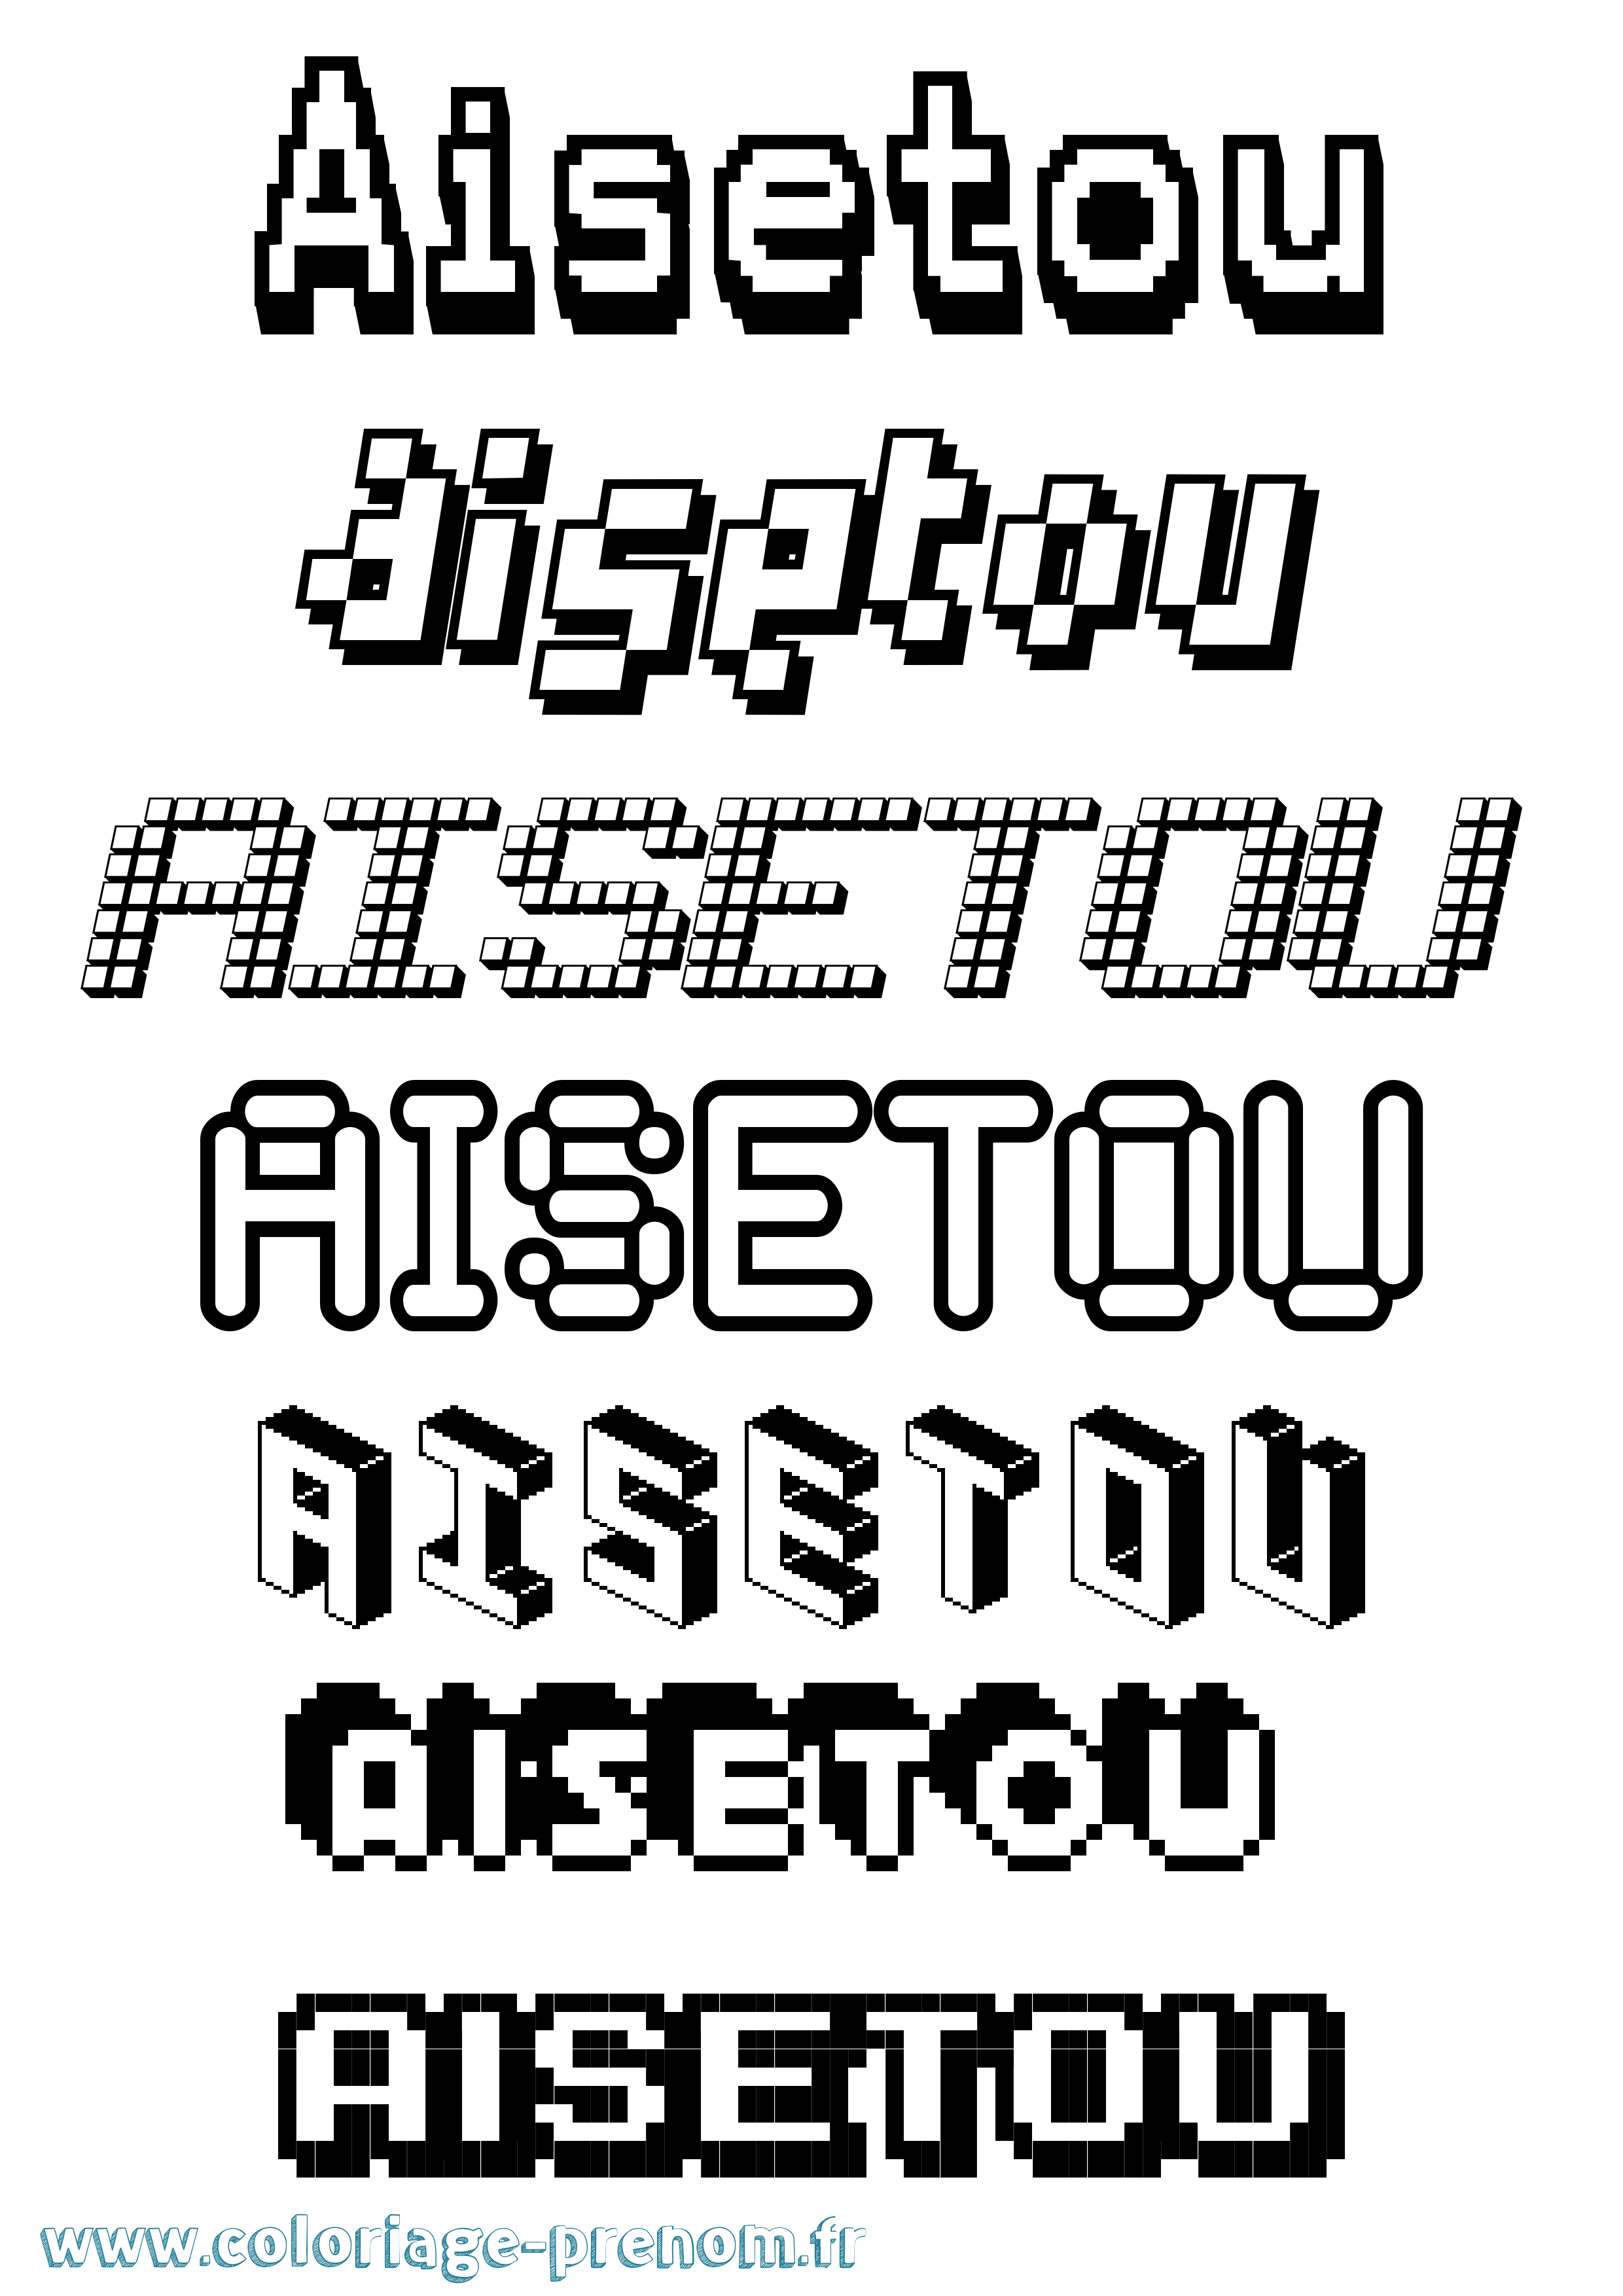 Coloriage prénom Aisetou Pixel